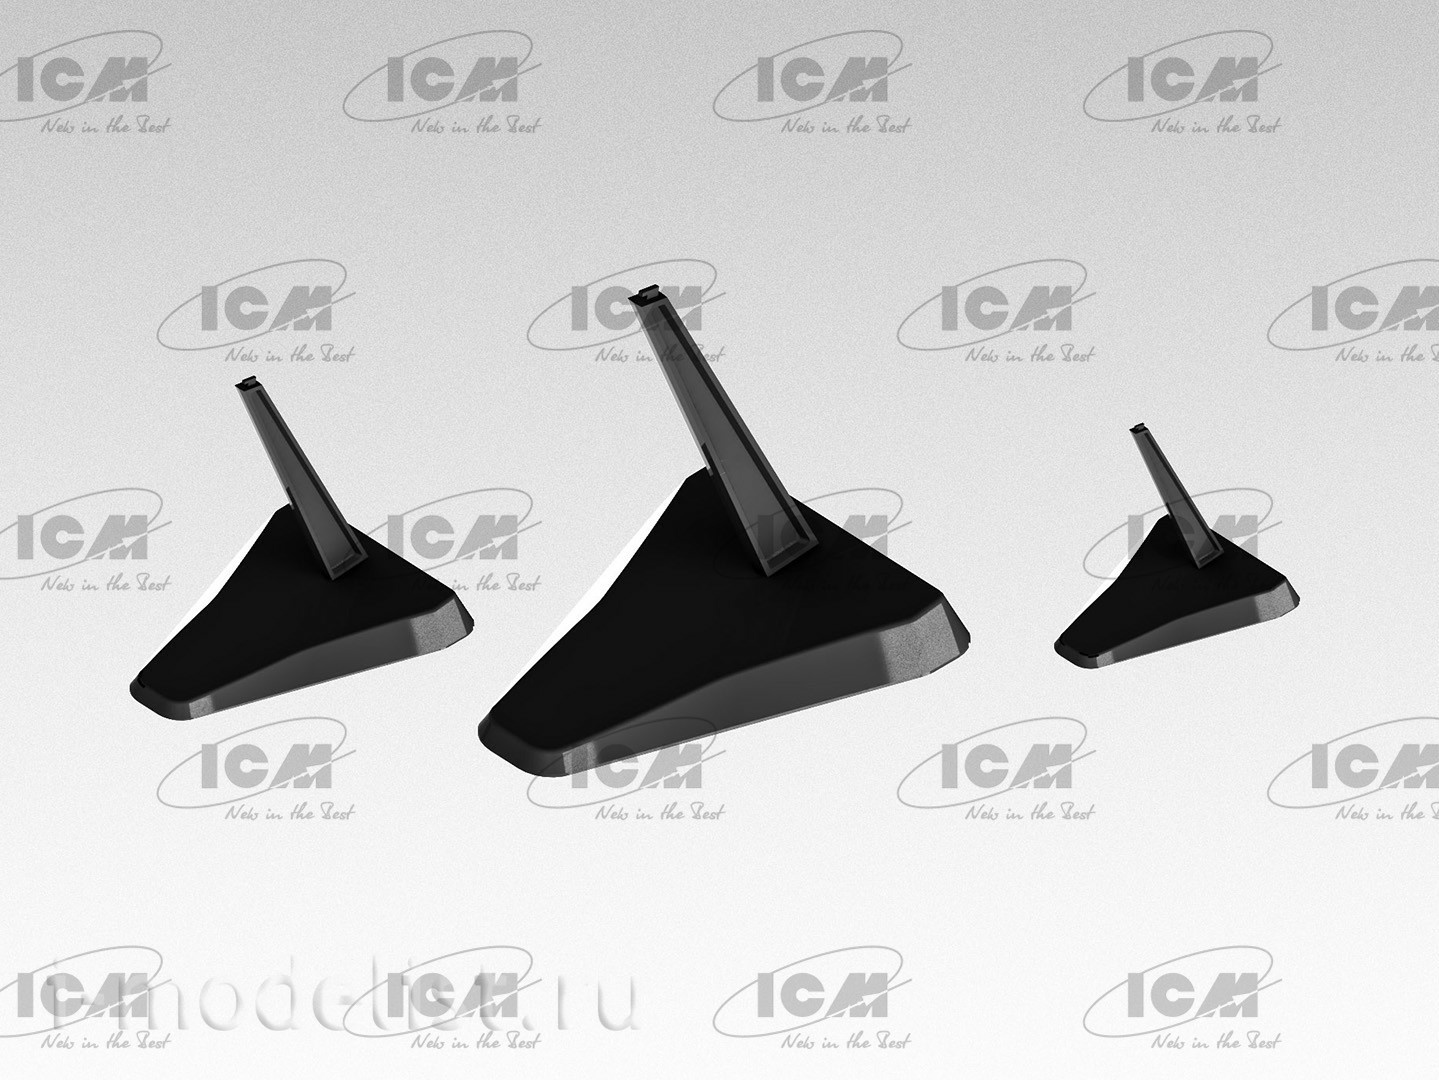 A002 ICM Подставки для моделей самолетов (Black Edition)